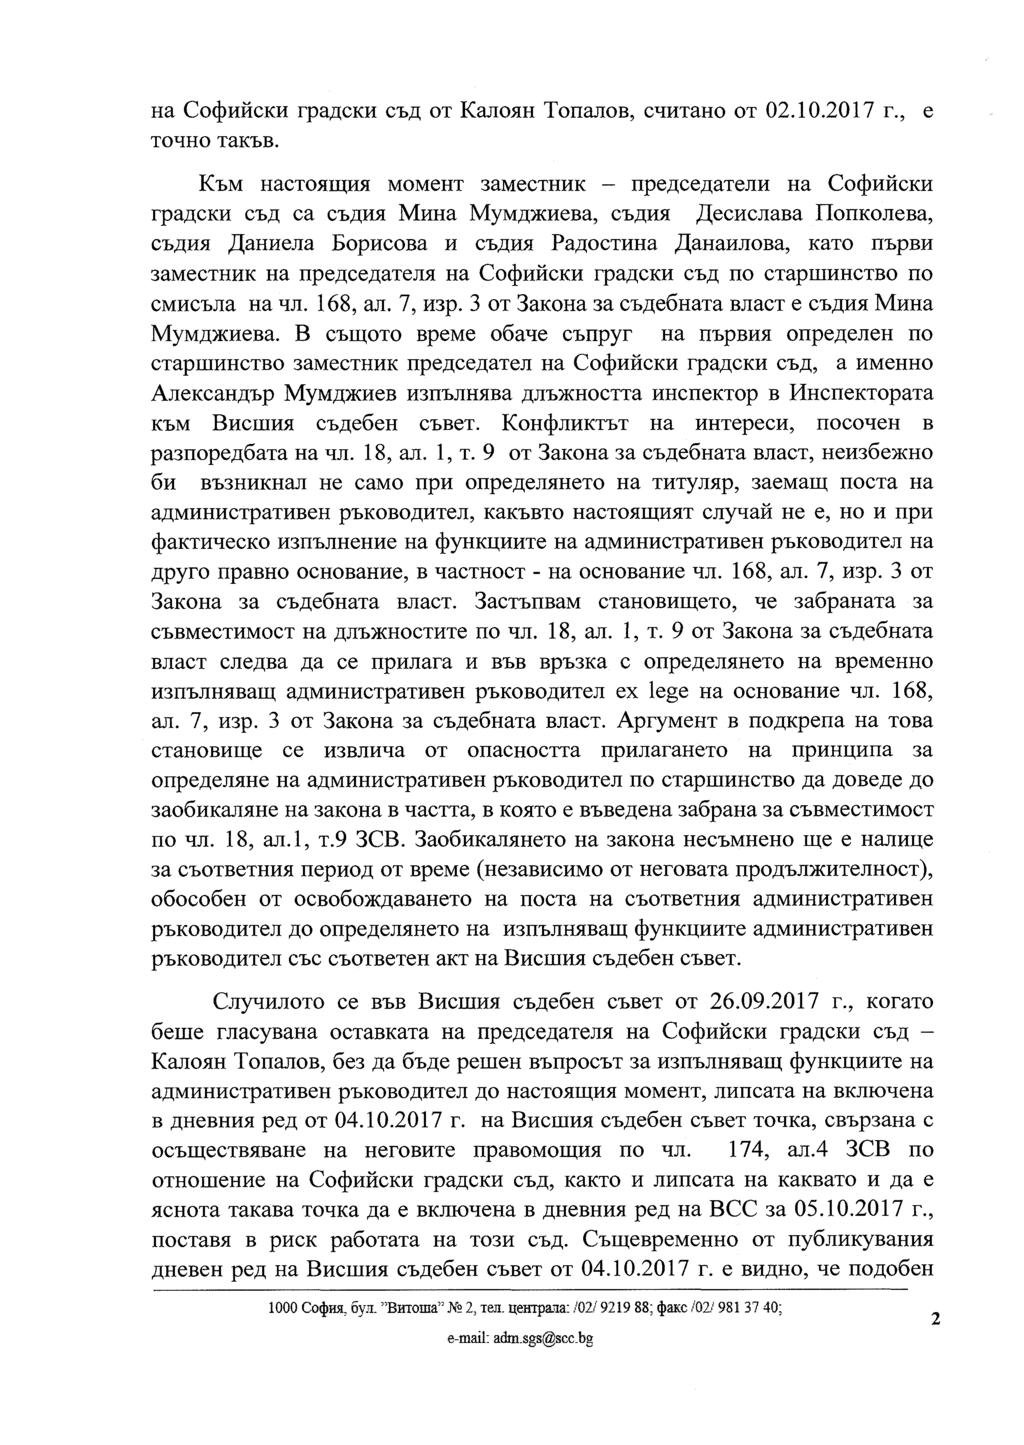 на Софийски градски съд от Калоян Топалов, считано от 02.10.2017 г., е точно такъв.